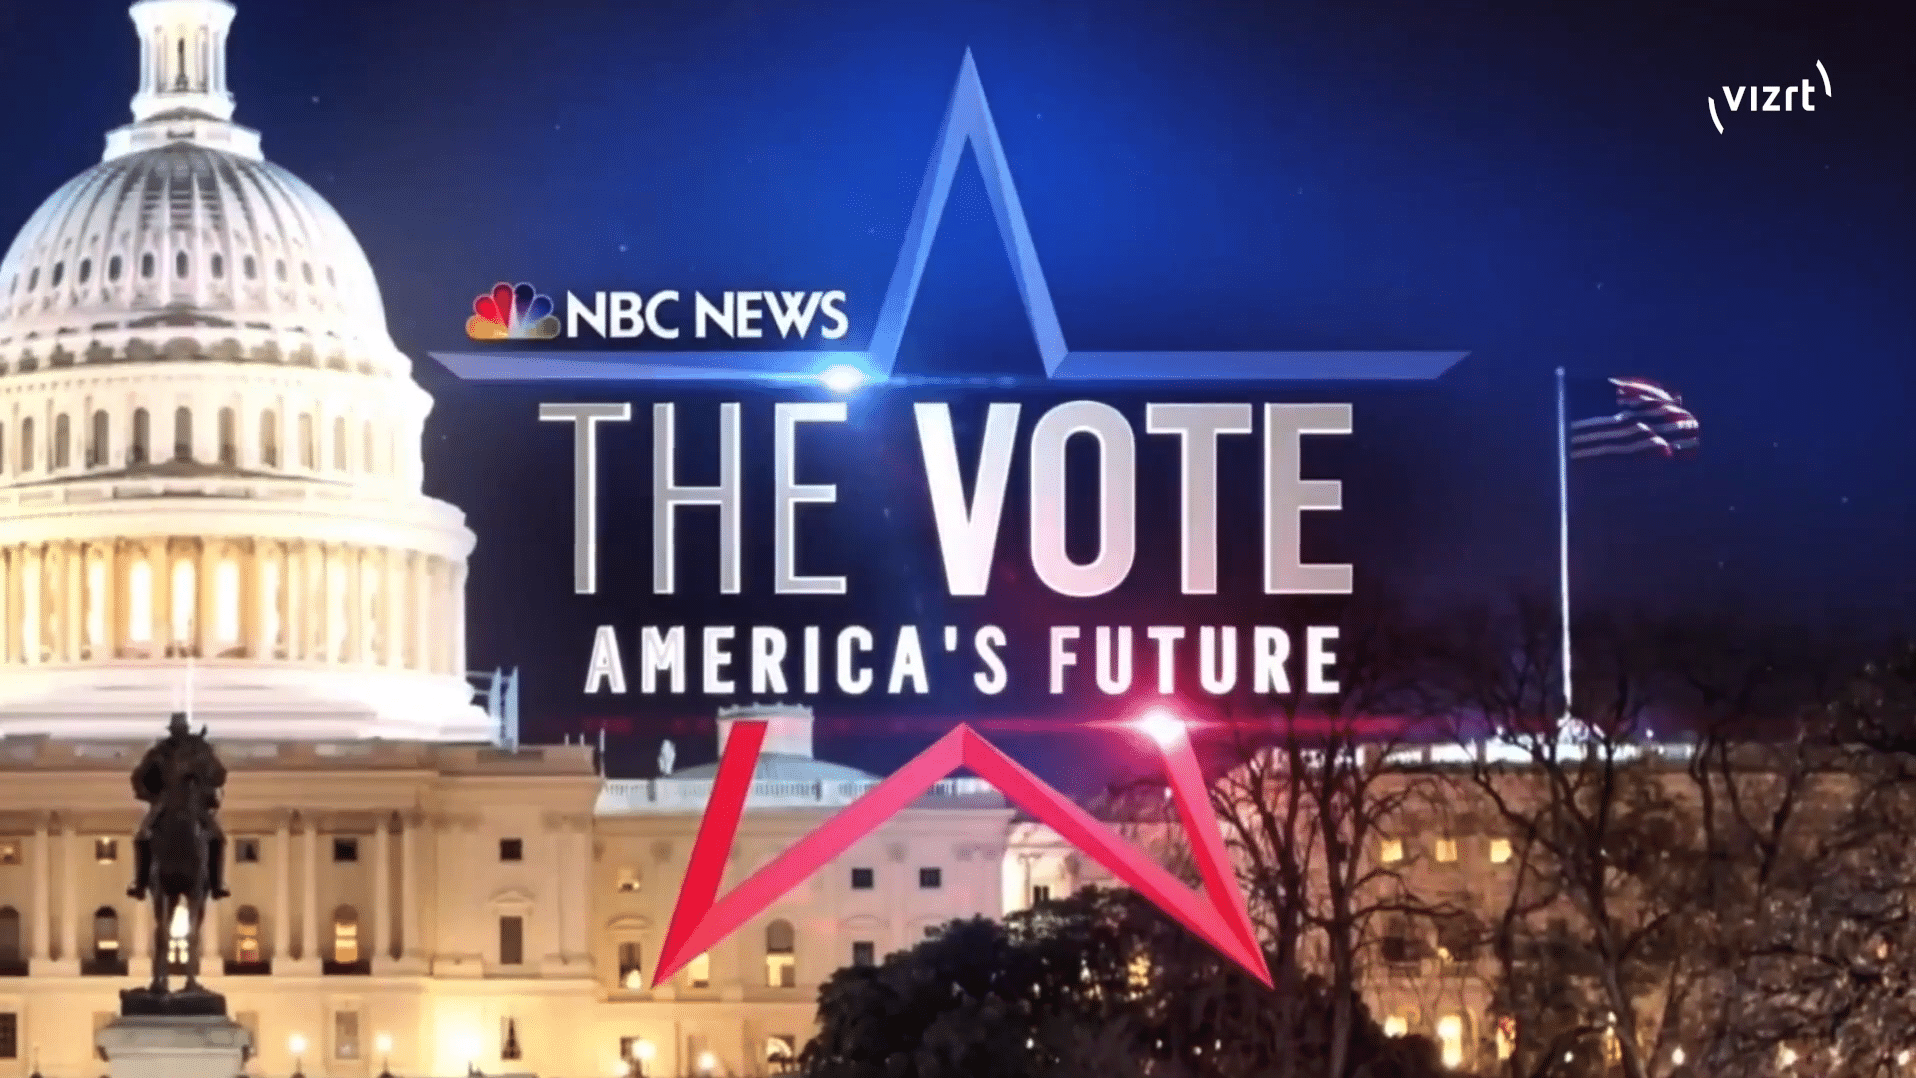 NBC News - The Vote - America's Future - 2020 election coverage.